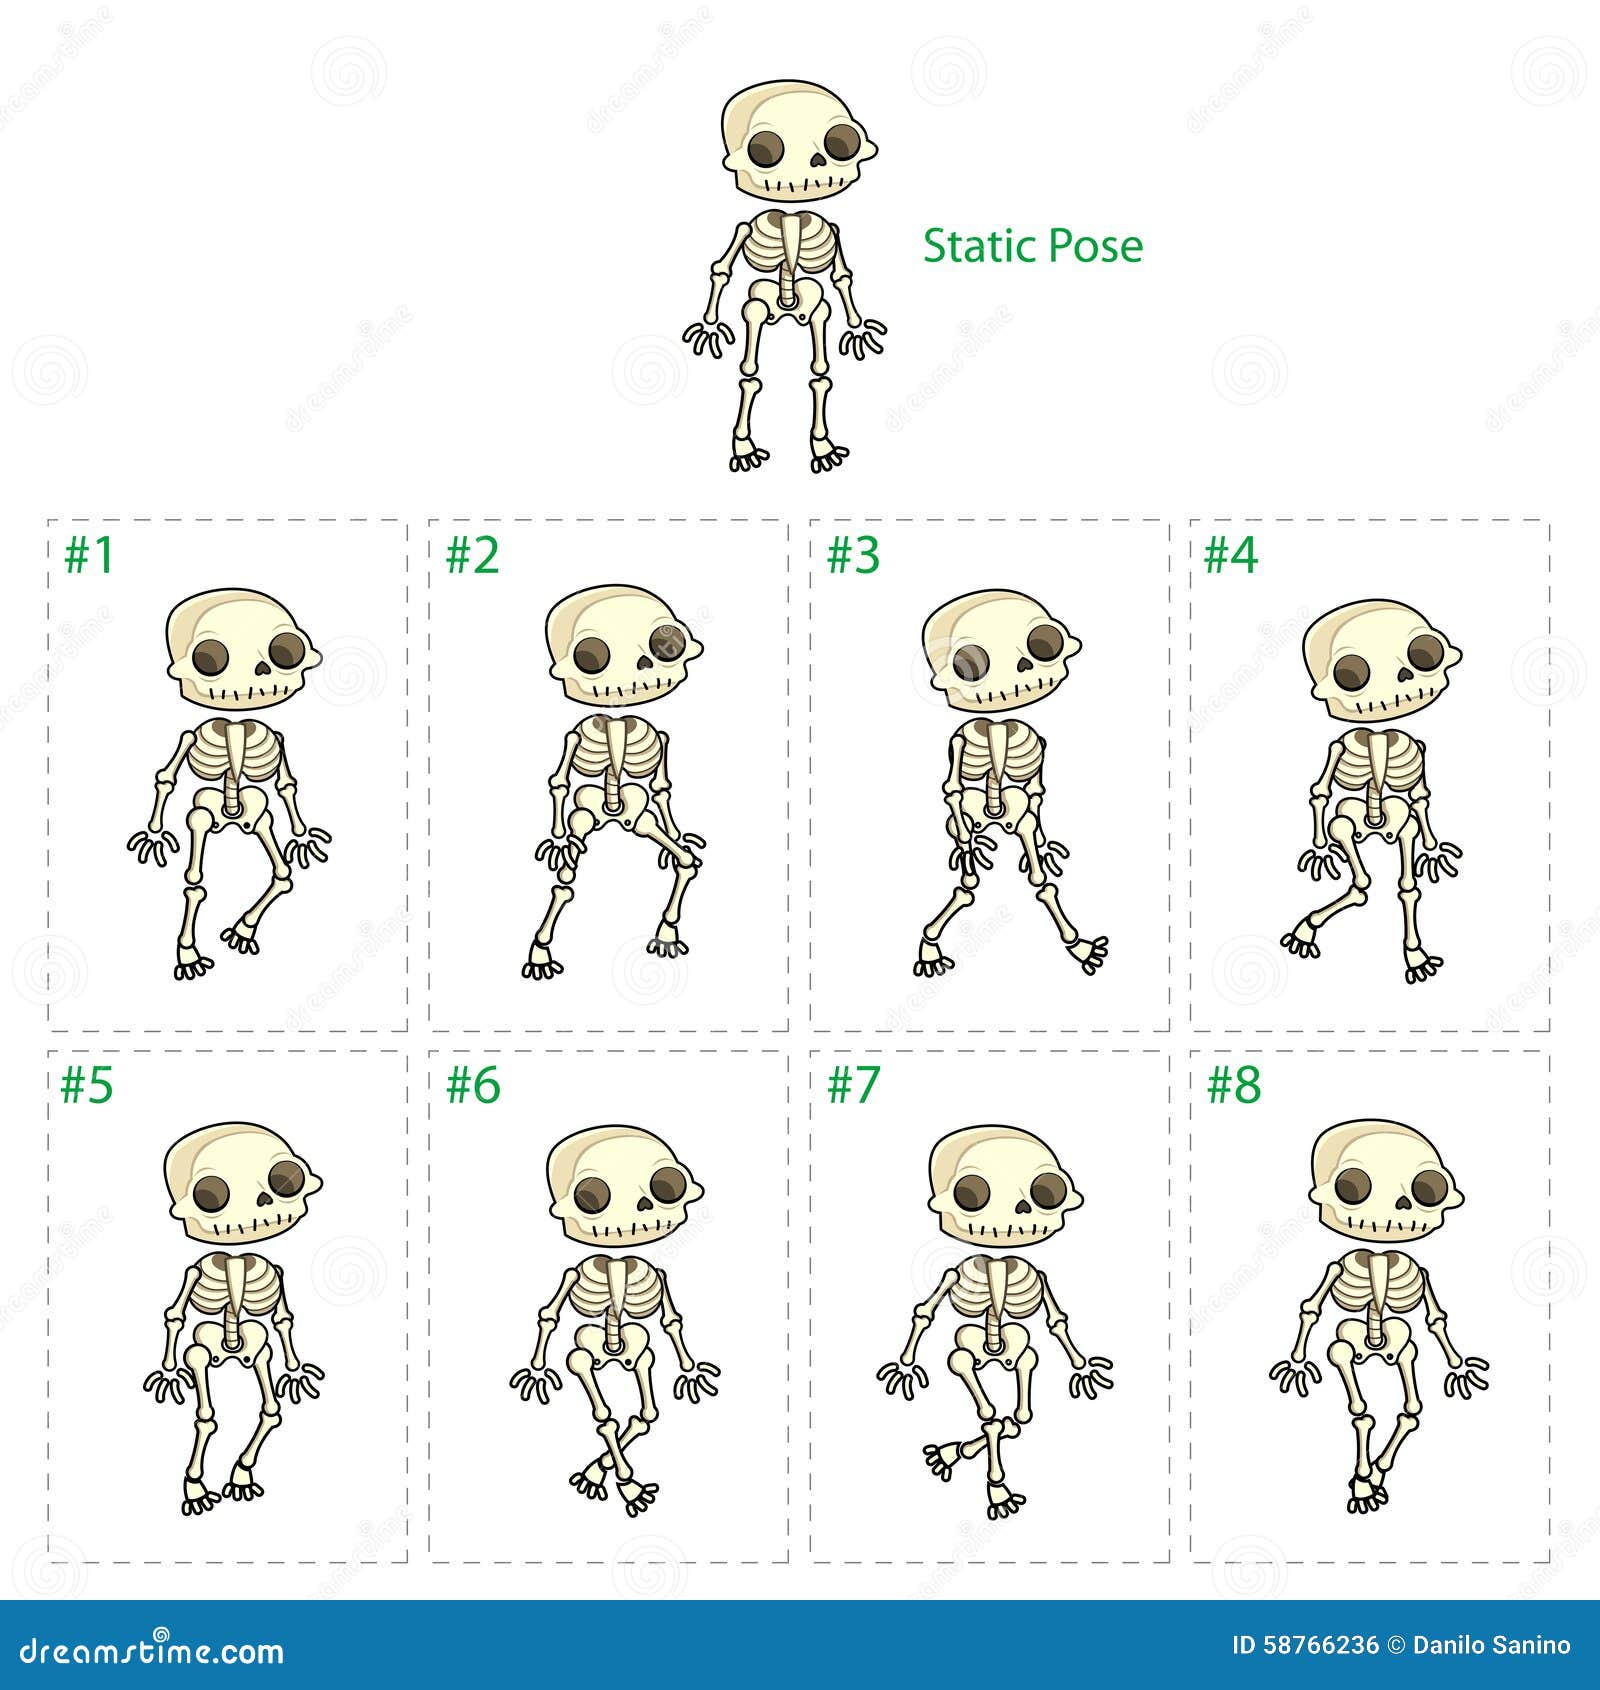 animation of skeleton walking